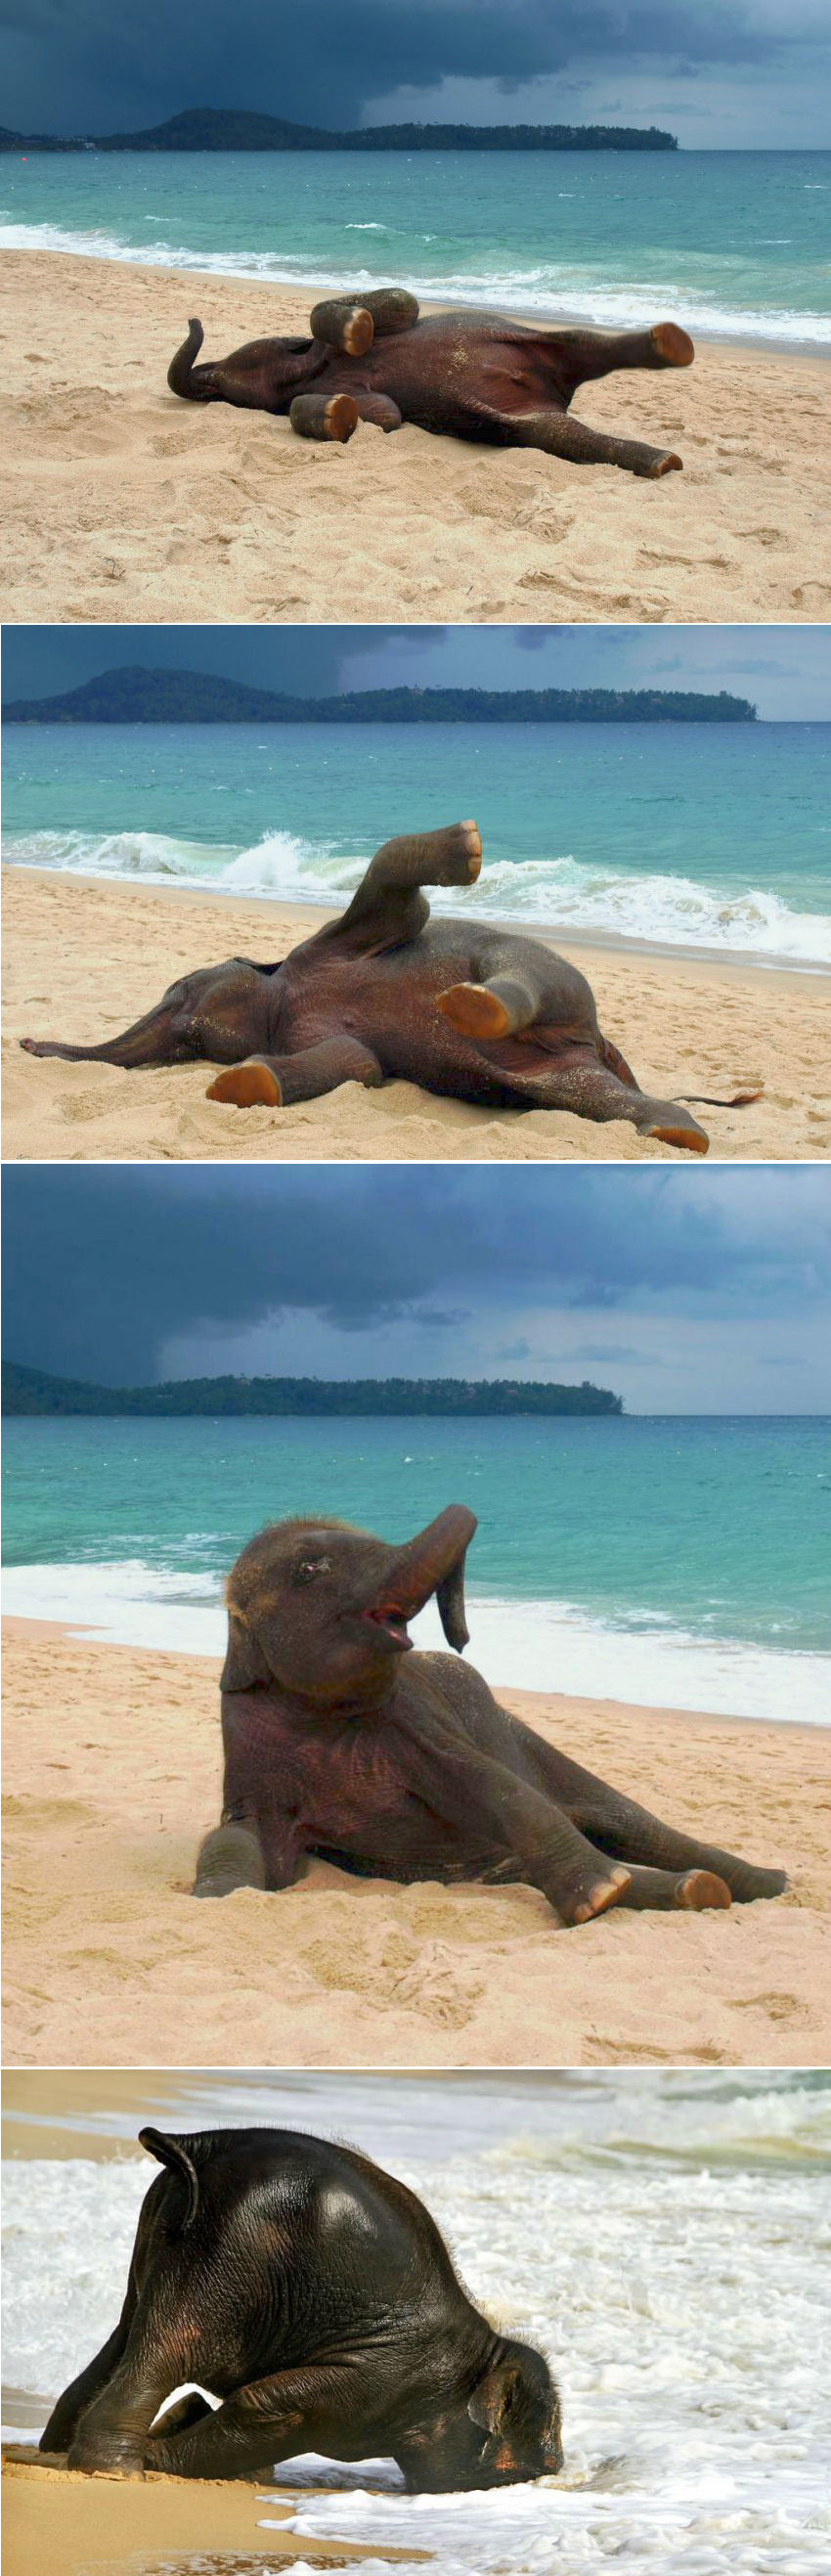 Un éléphanteau découvre la plage